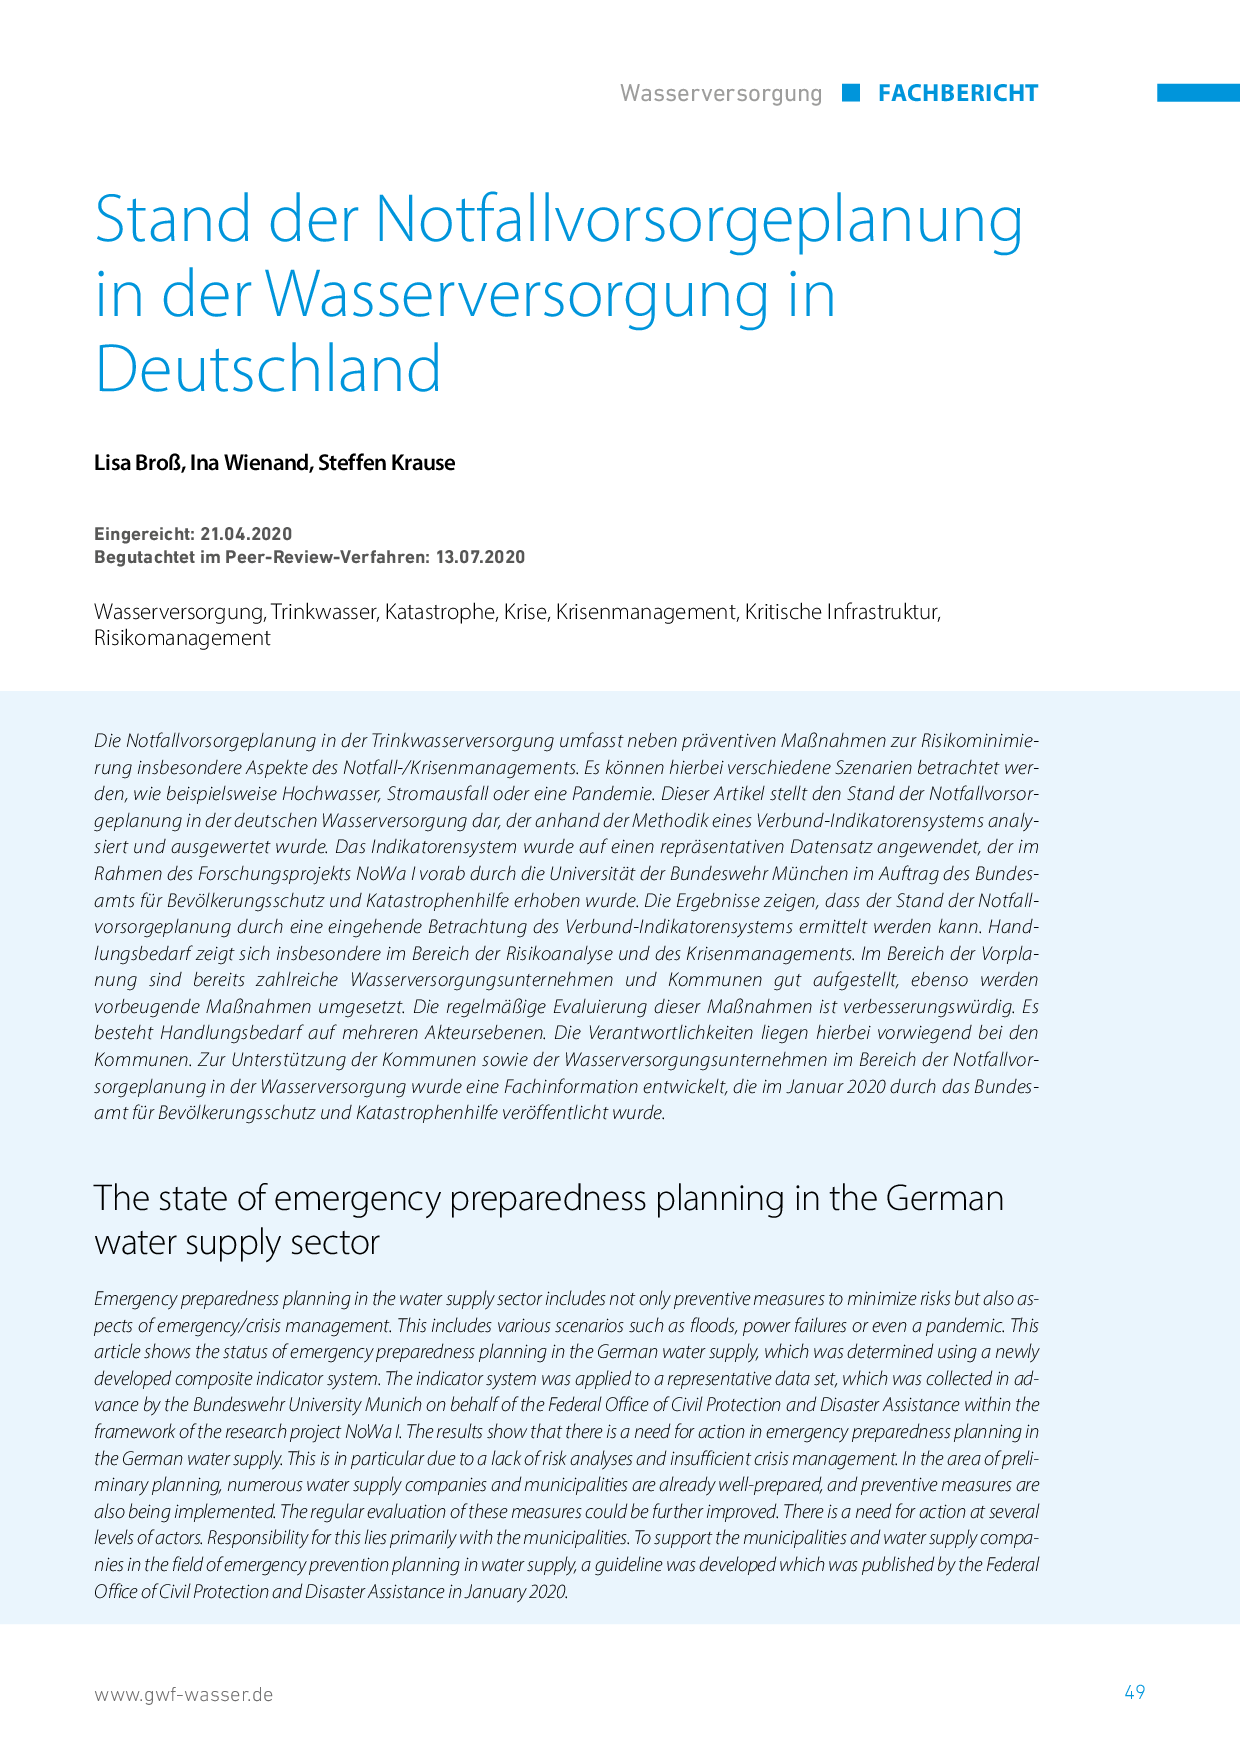 Stand der Notfallvorsorgeplanung in der Wasserversorgung in Deutschland